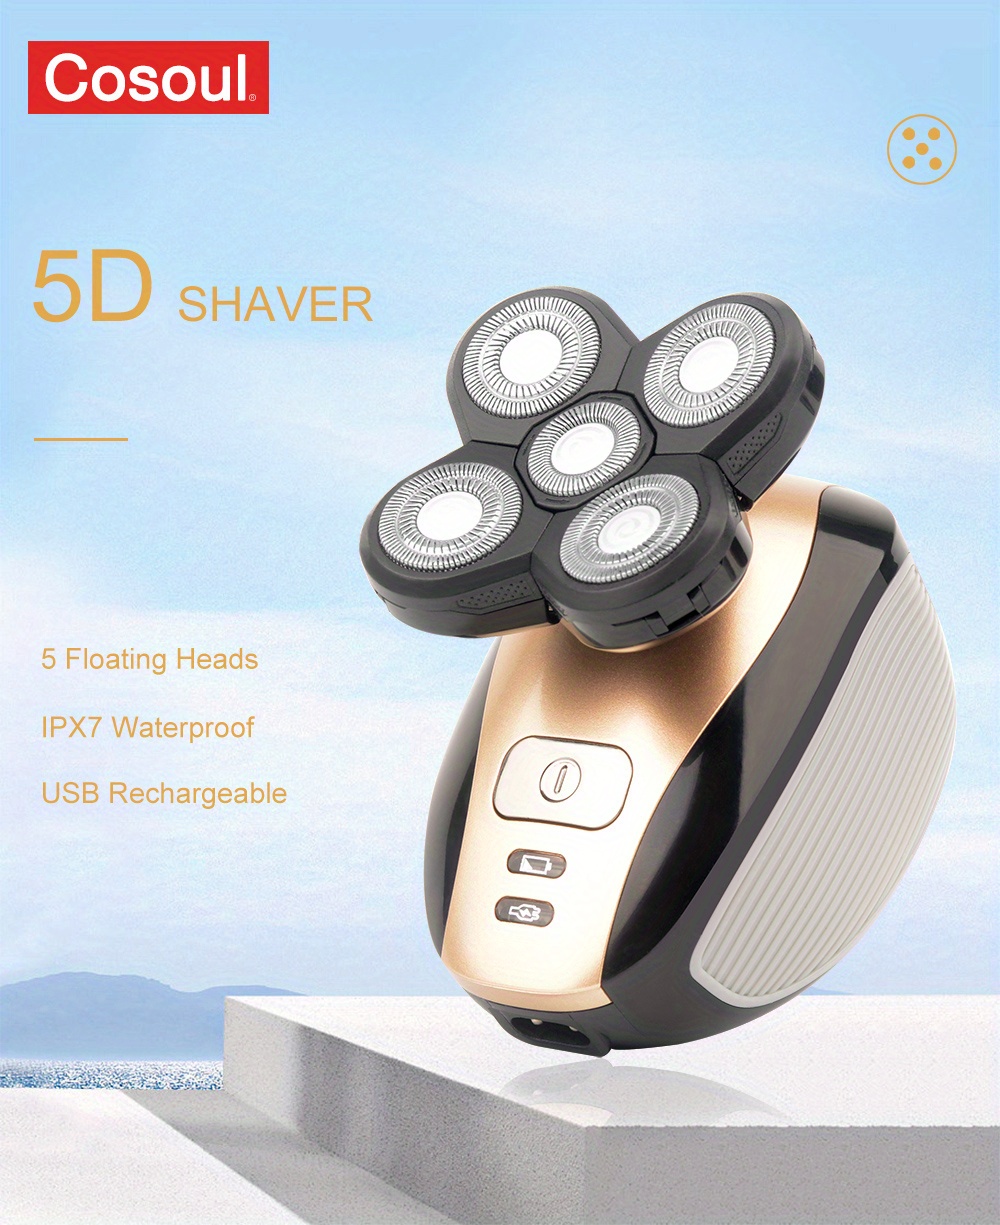 Afeitadora eléctrica 5D rotativa con recortadora emergente, pantalla LED,  afeitadoras de cabeza calva, eléctricas, inalámbricas, recargables, para